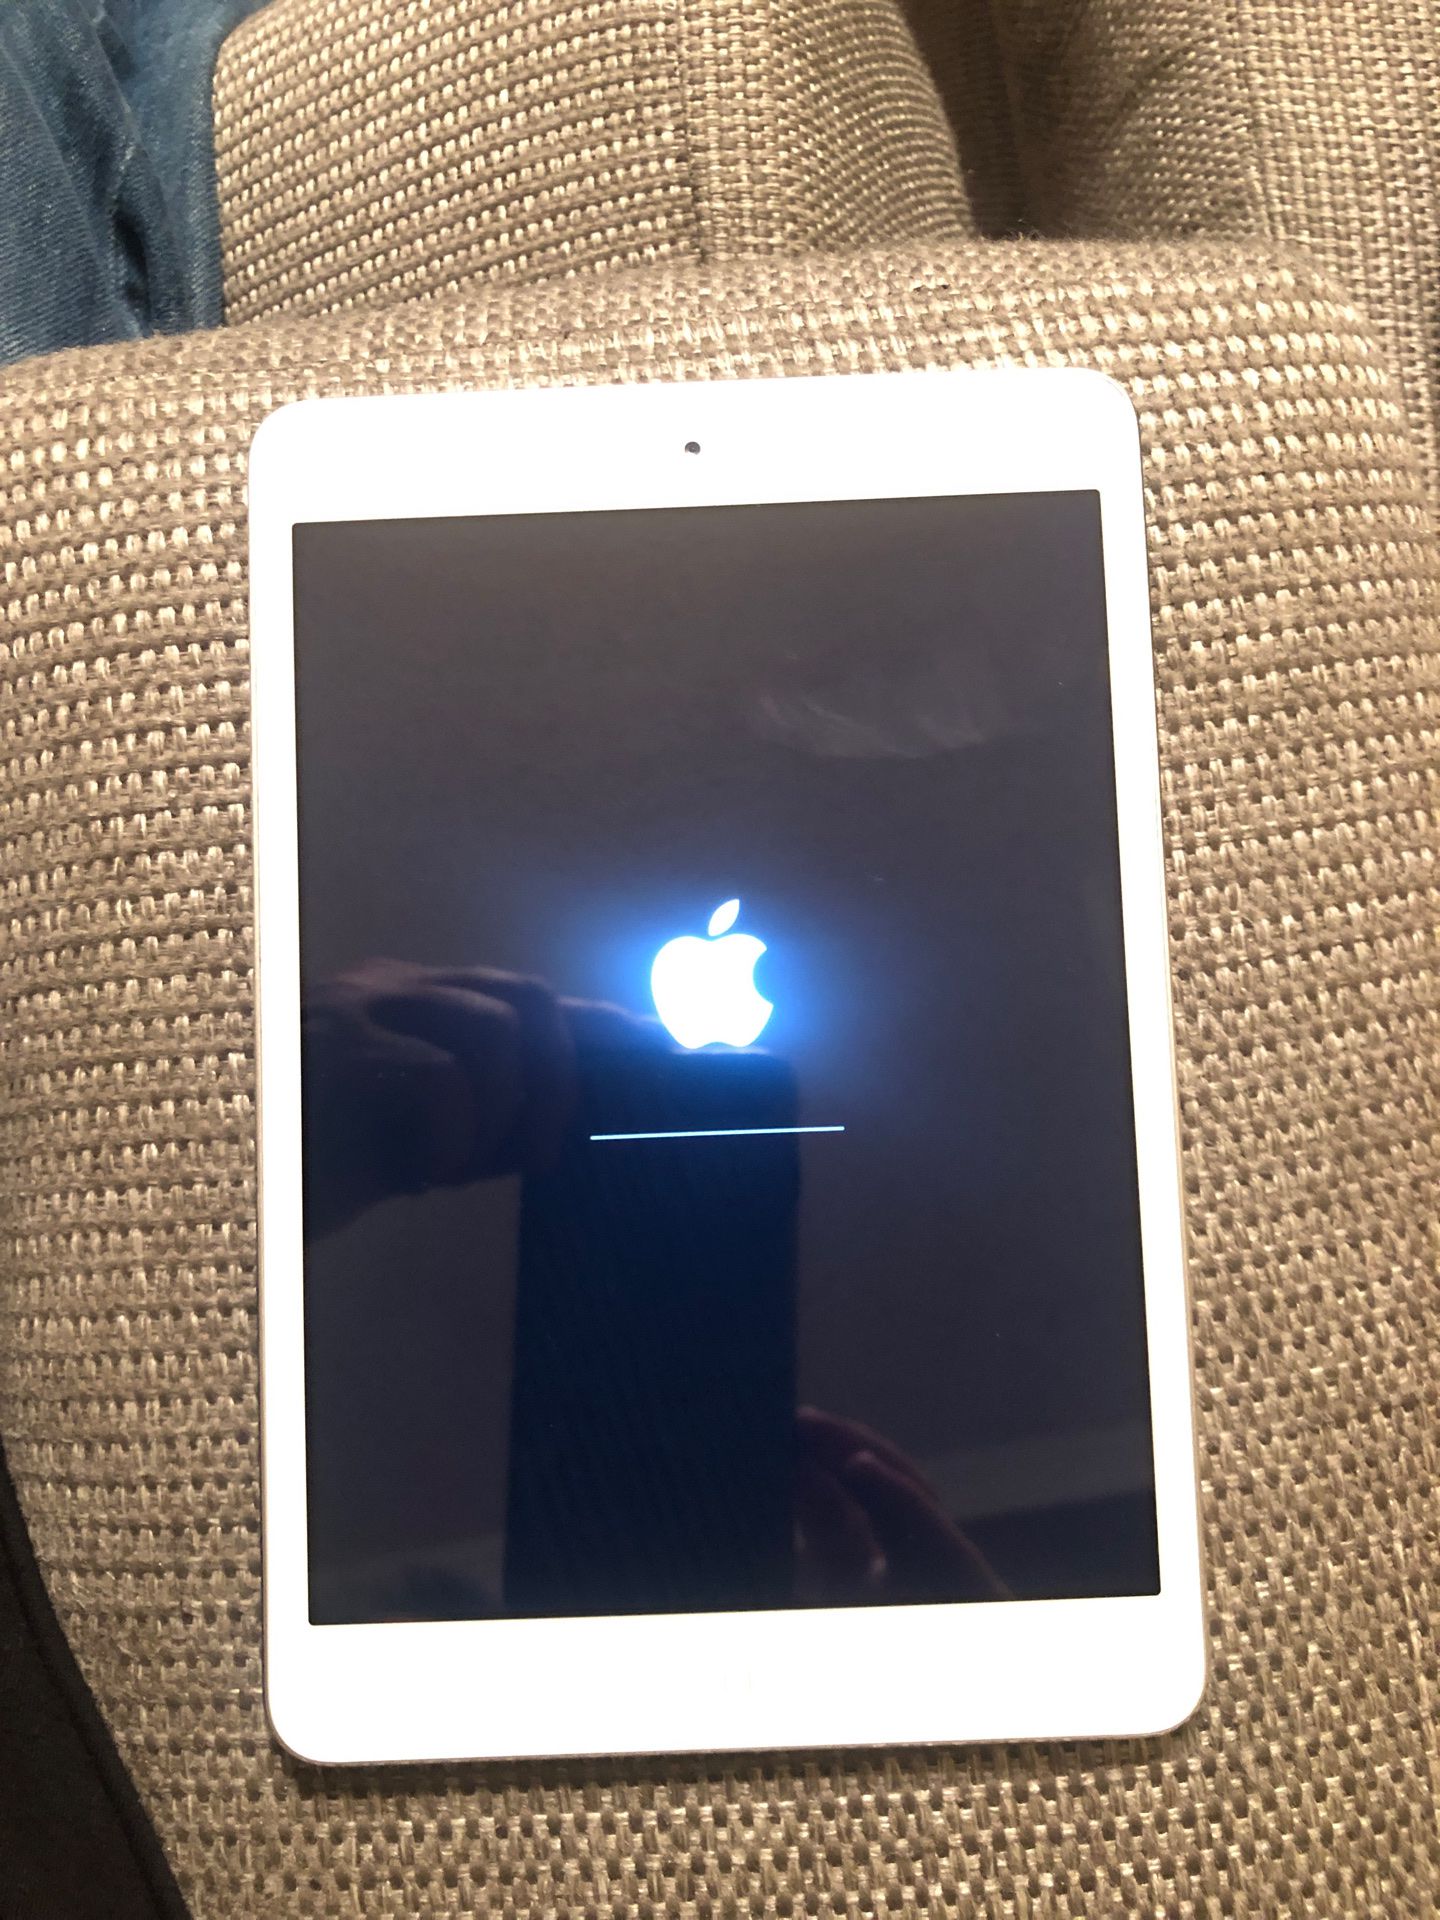 Apple iPad mini MD531LL/A - 16GB Tablet - Wi-Fi - Silver